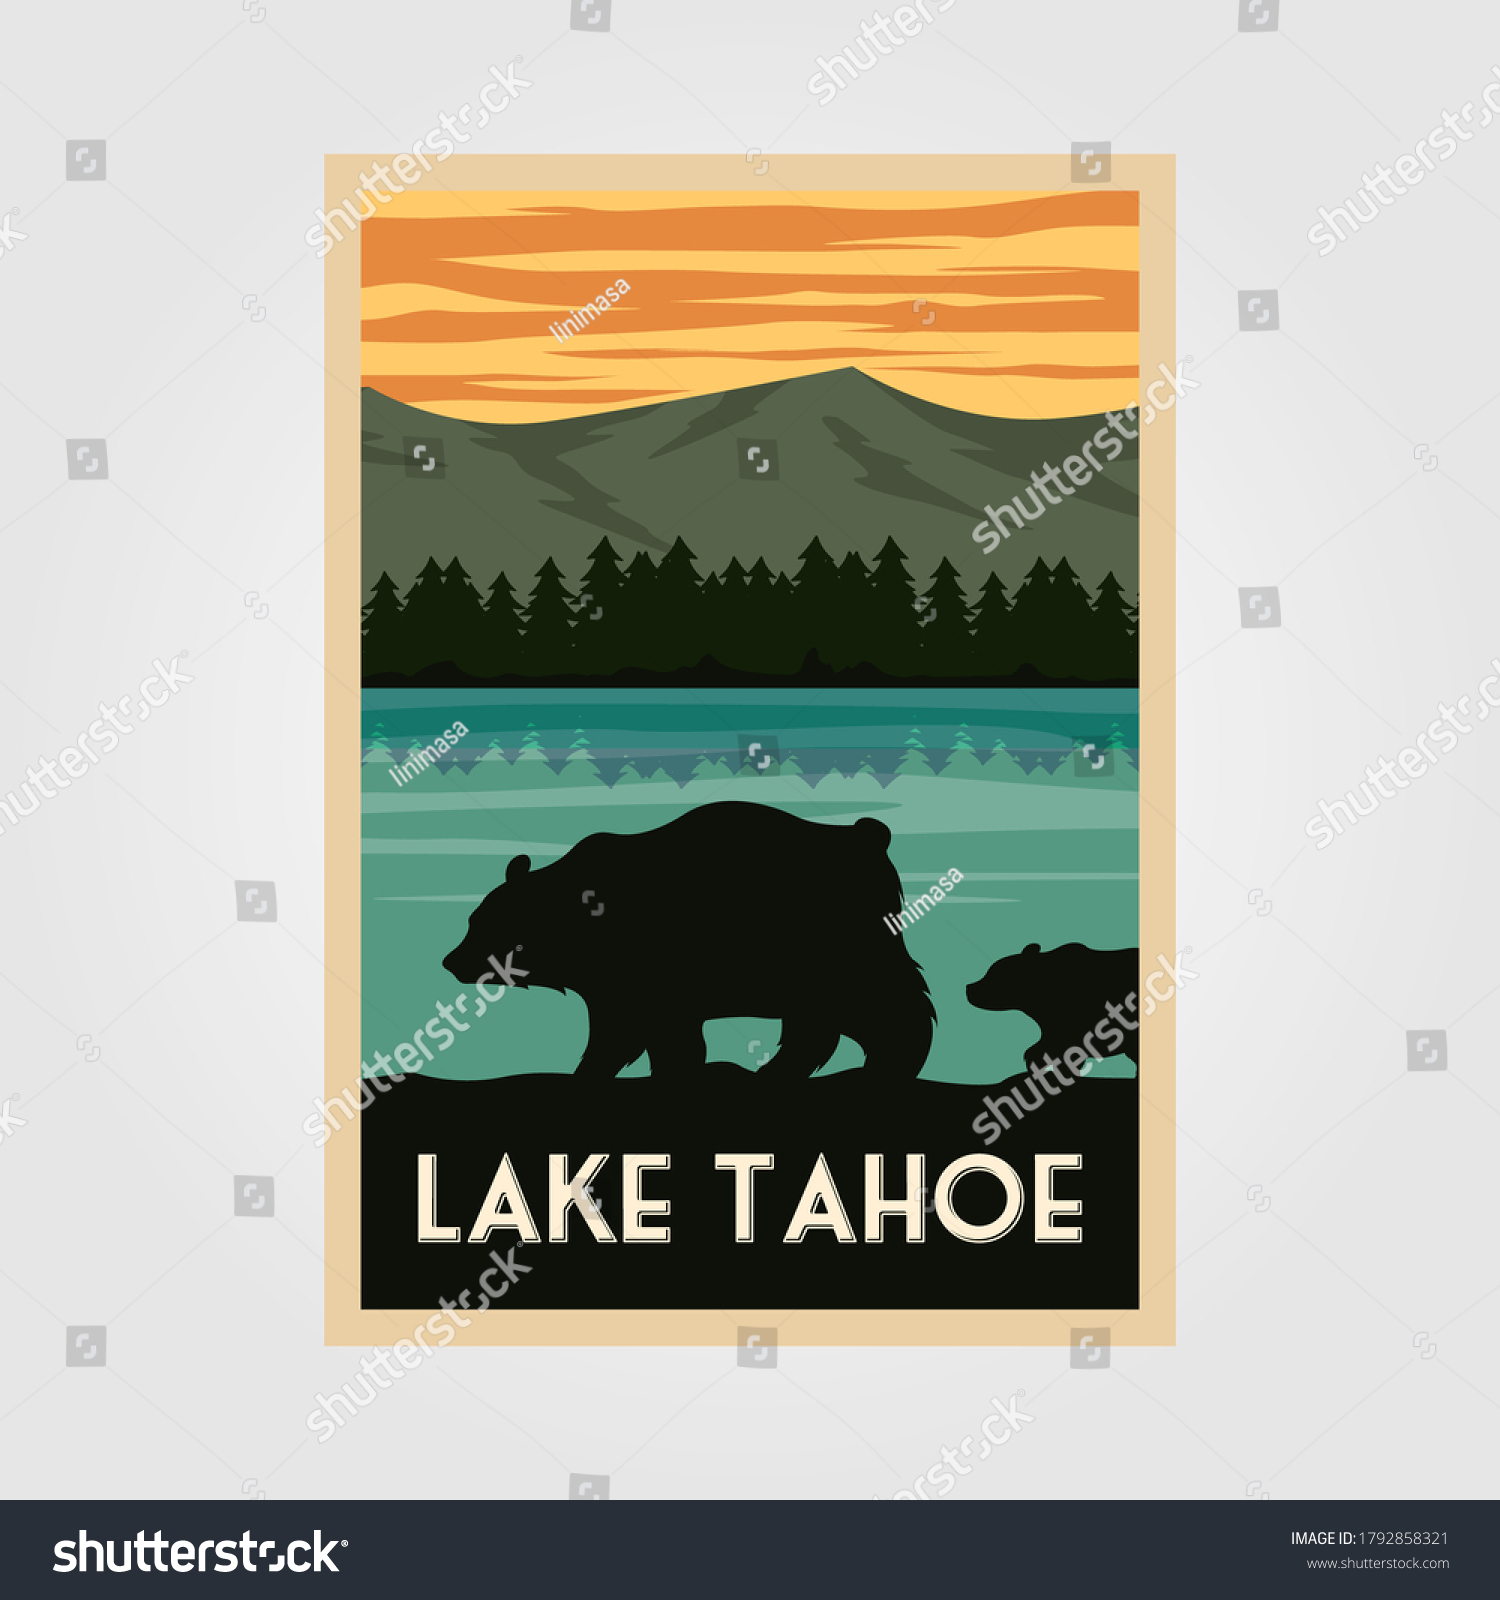 SVG of lake tahoe national park vintage poster outdoor vector illustration design, wild bear poster svg